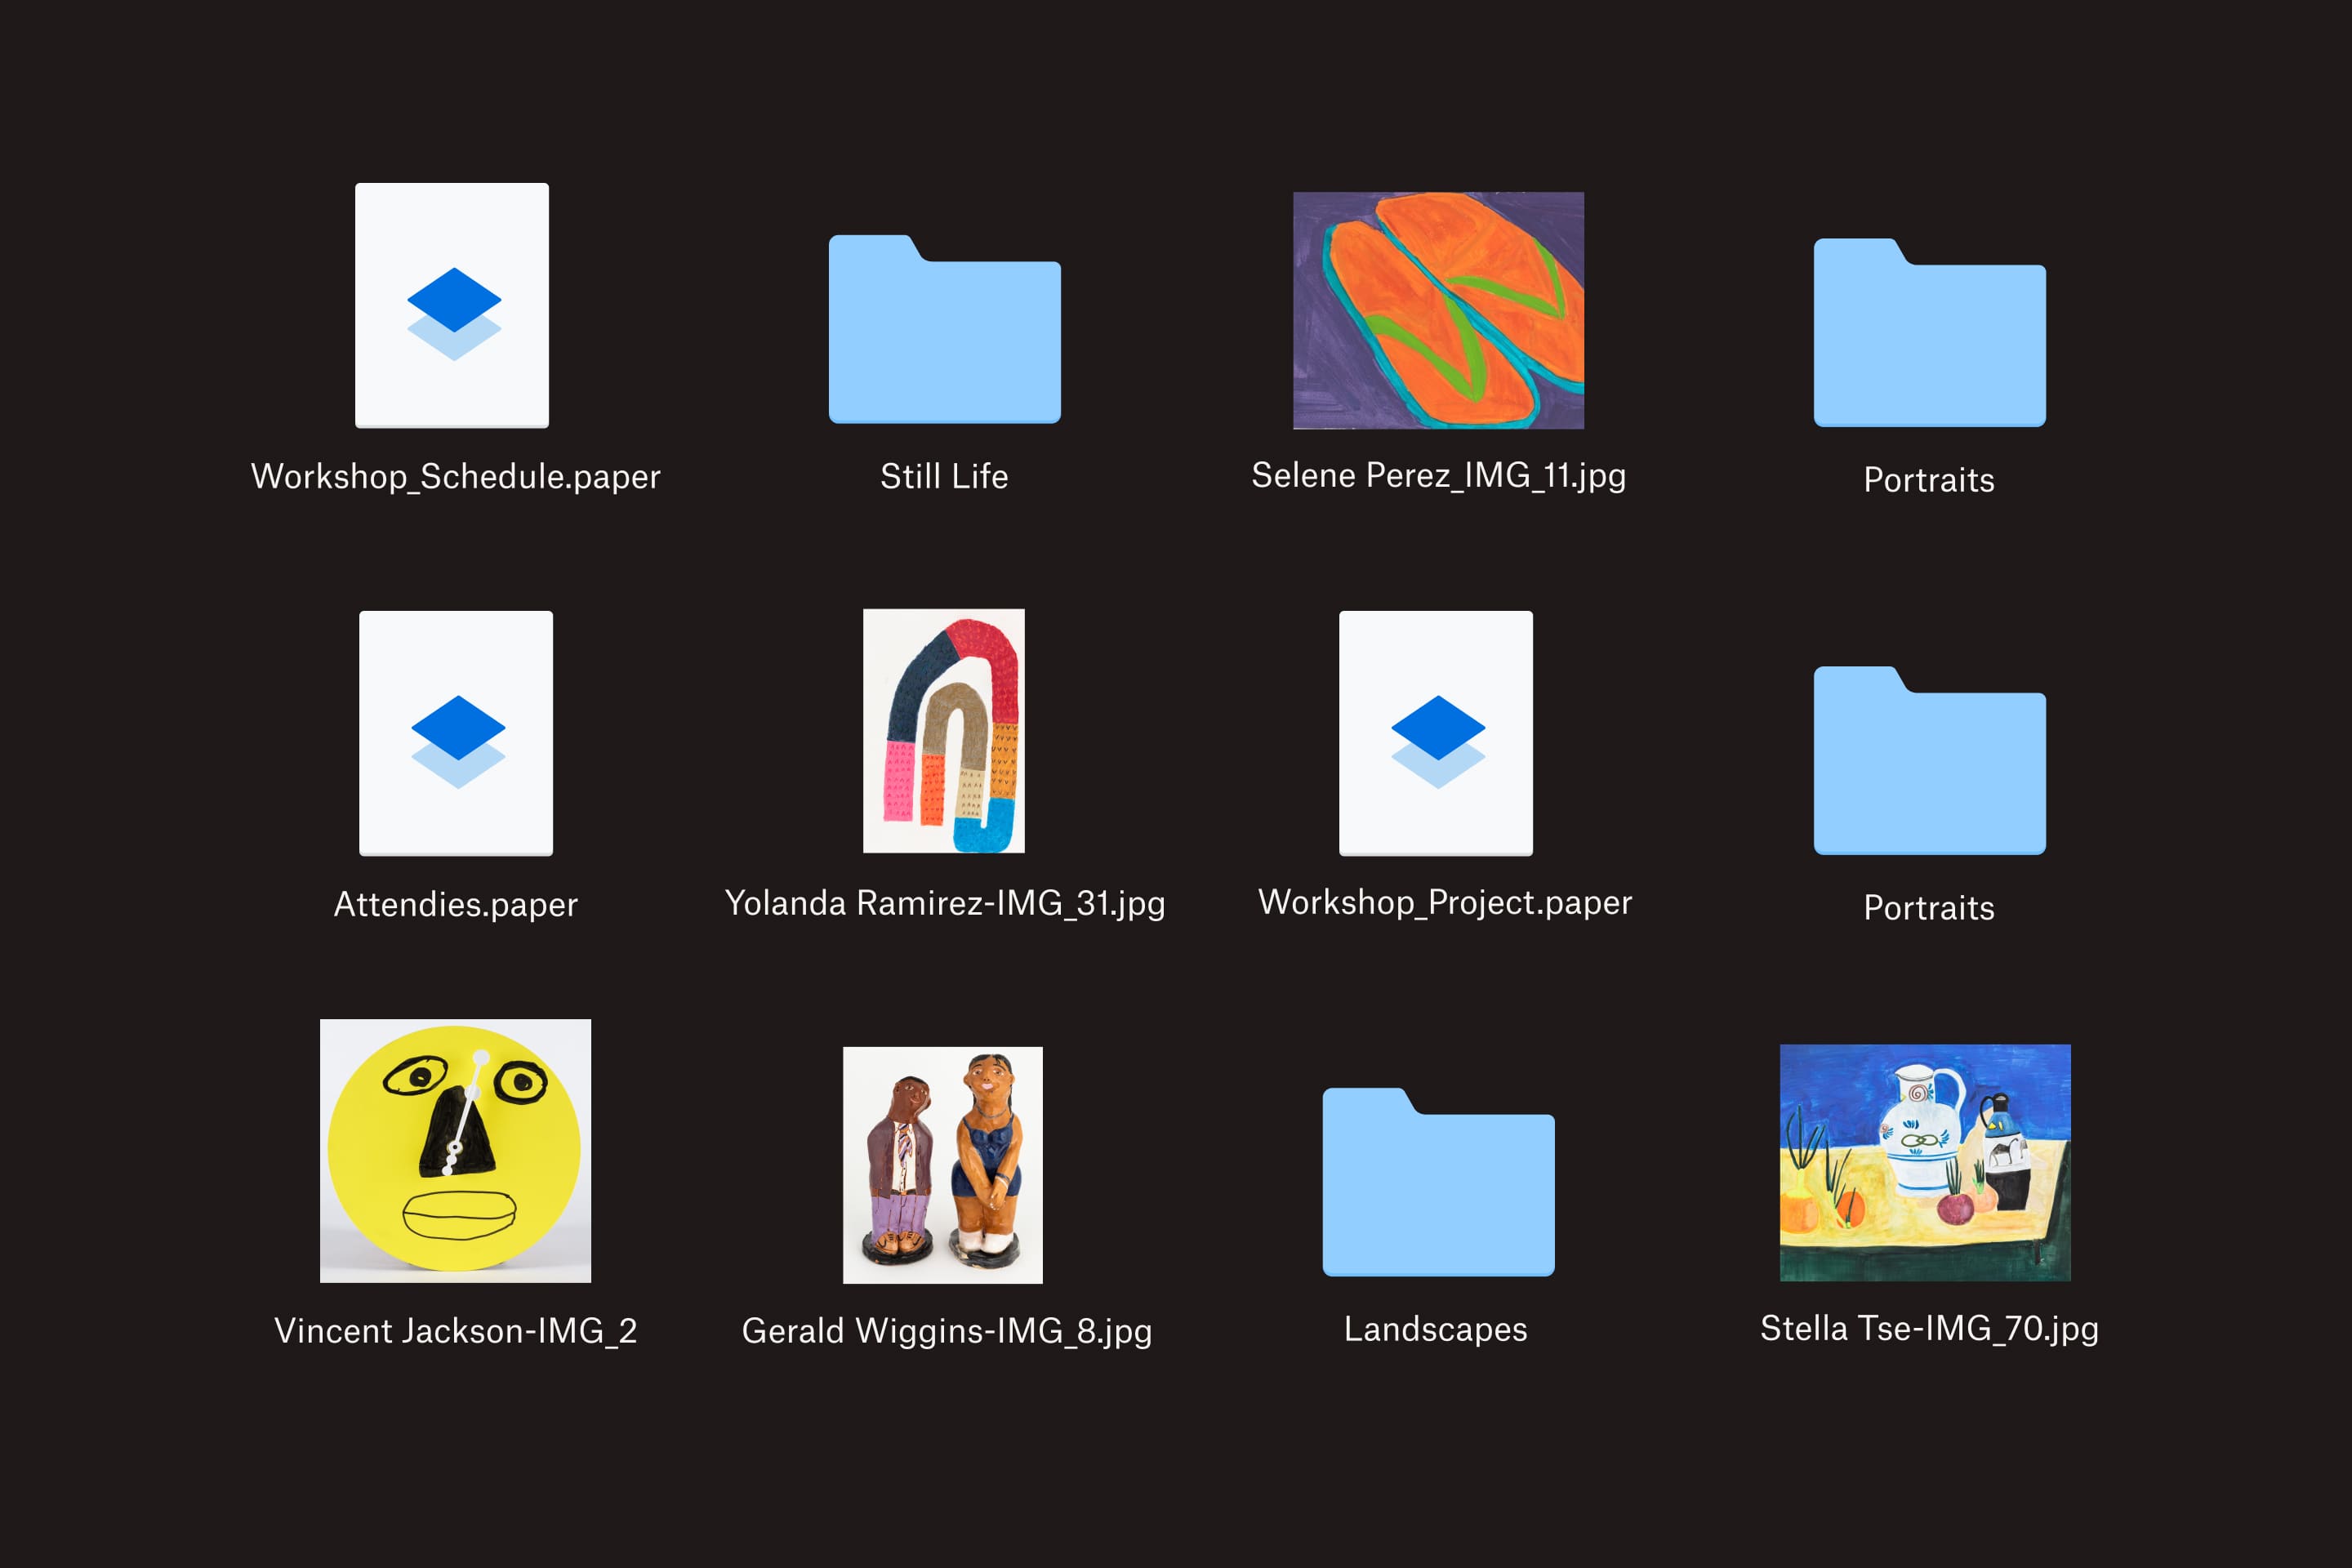 12 fichiers et dossiers dans Dropbox, avec des images d'artistes, des informations sur des ateliers et des portraits